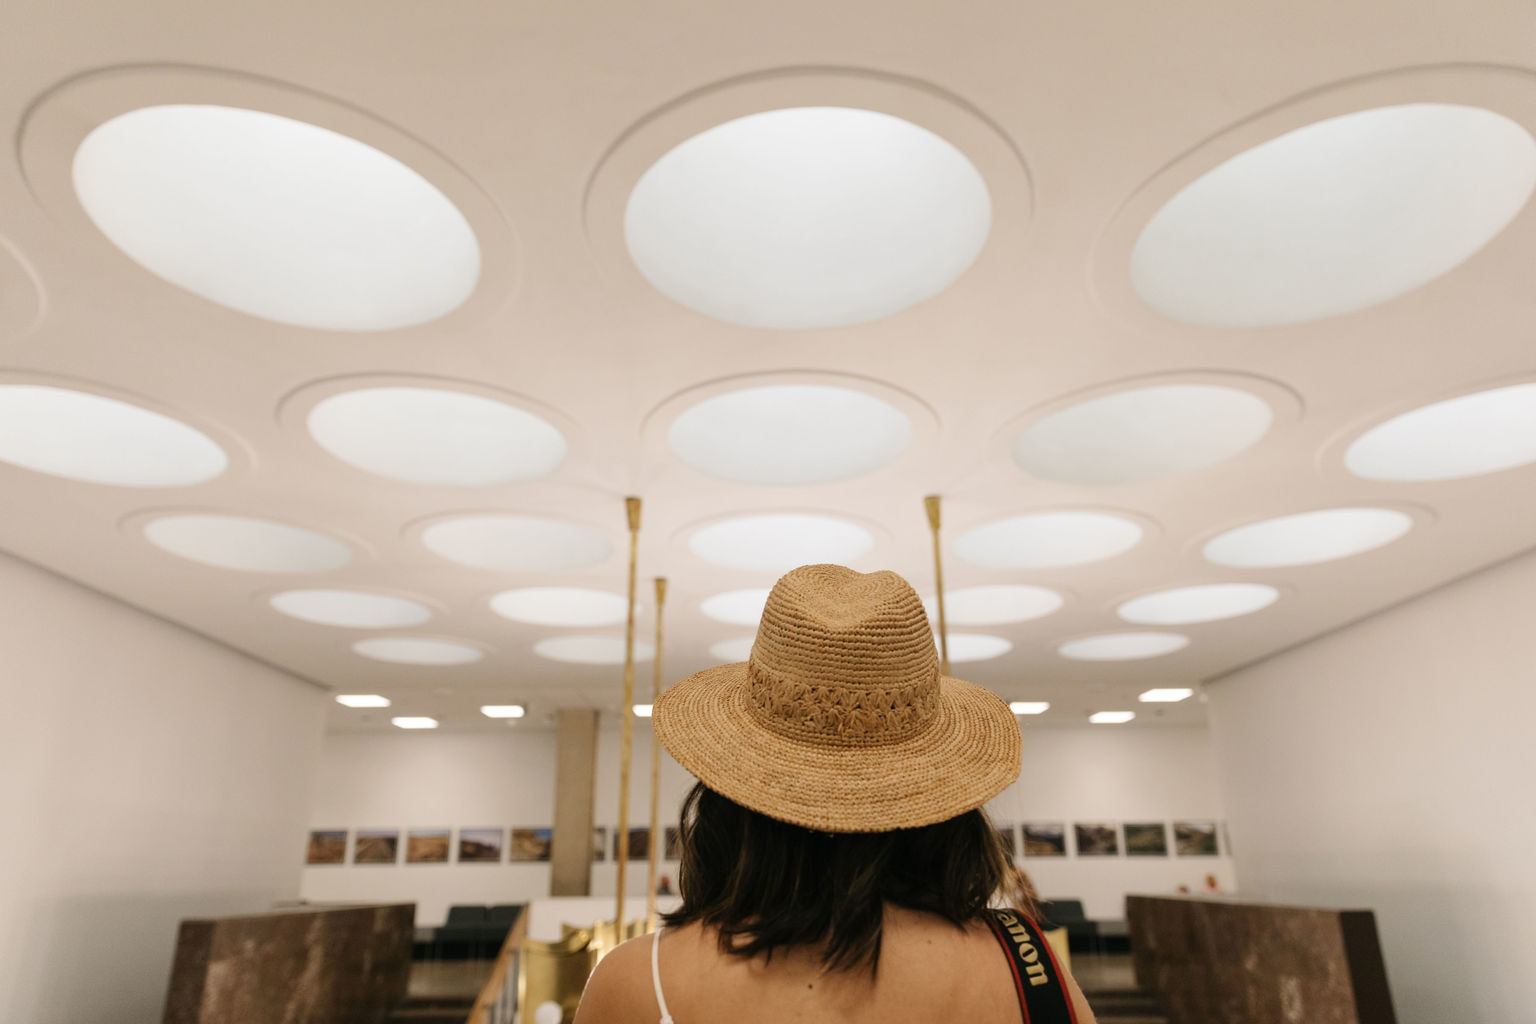 Foto realizzata all'interno di un palazzo che mostra una ragazza di spalle che indossa un cappello